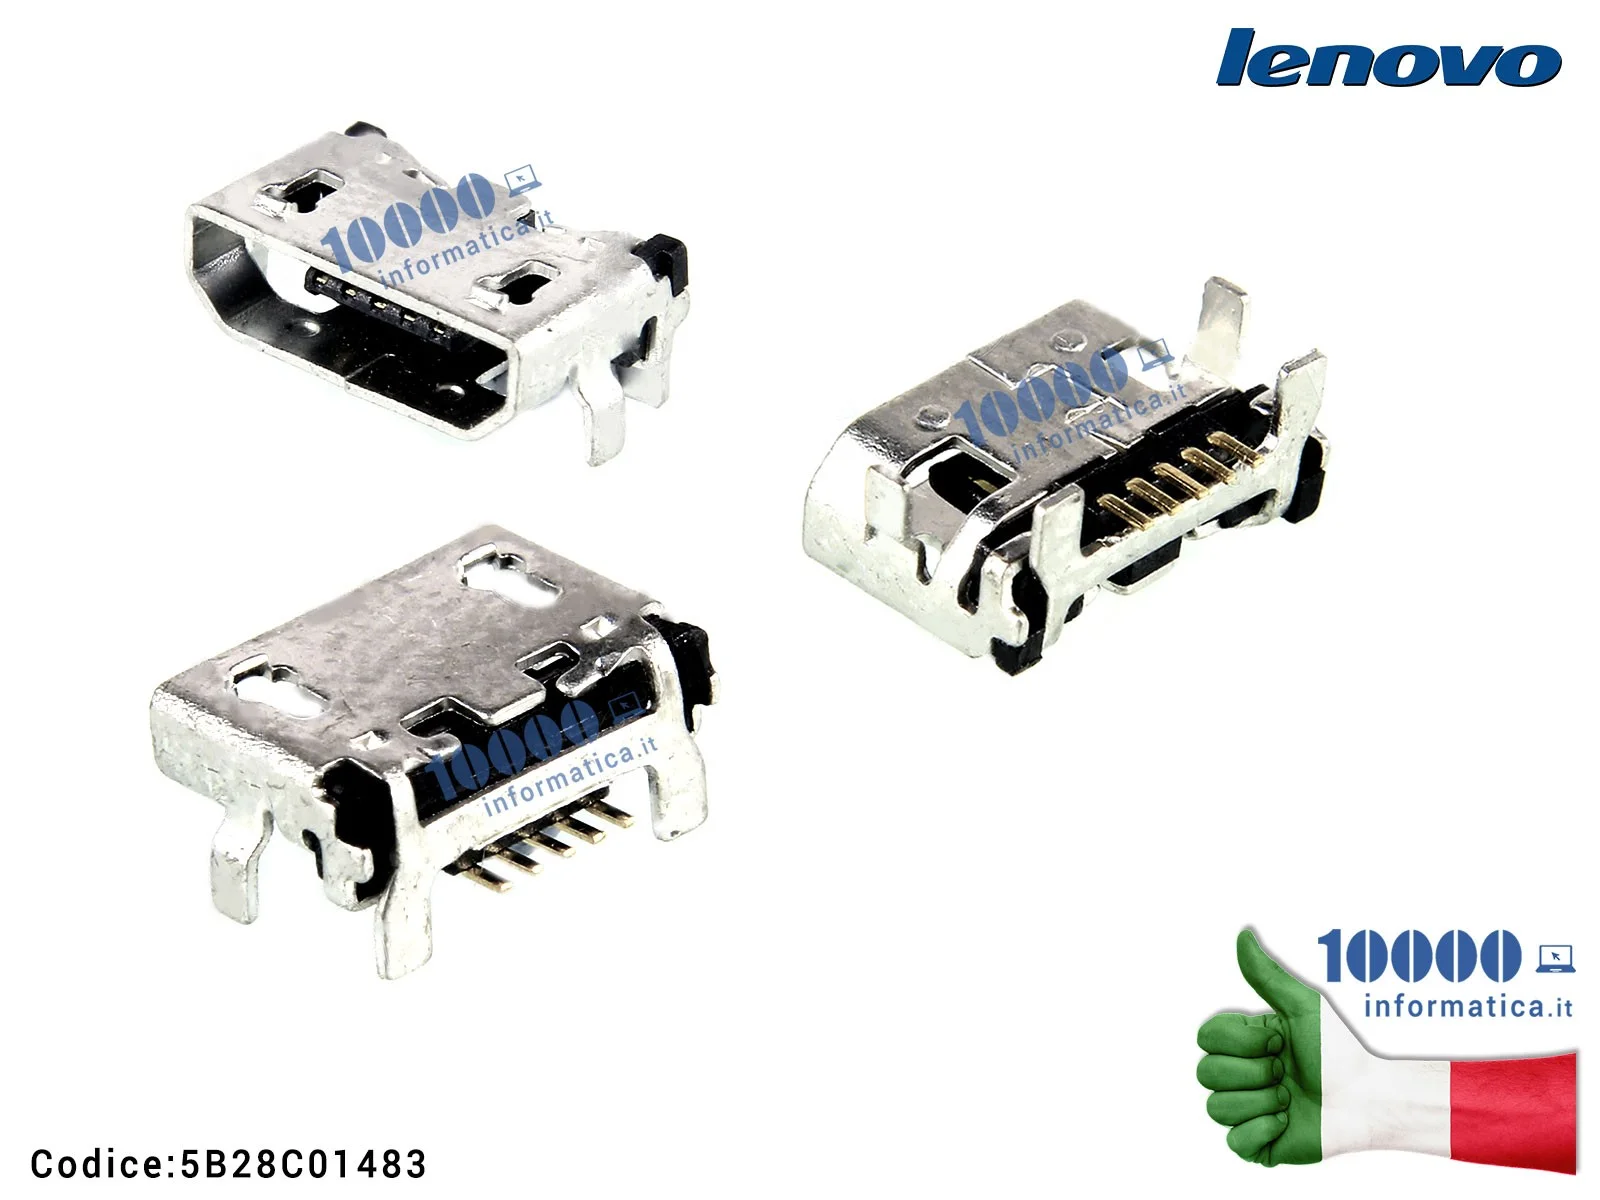 5B28C01483 Connettore di Alimentazione micro USB DC Power Jack LENOVO TAB 2 A10-70F A7600H A370E A3000 A3000H A5000 A7600 S91...